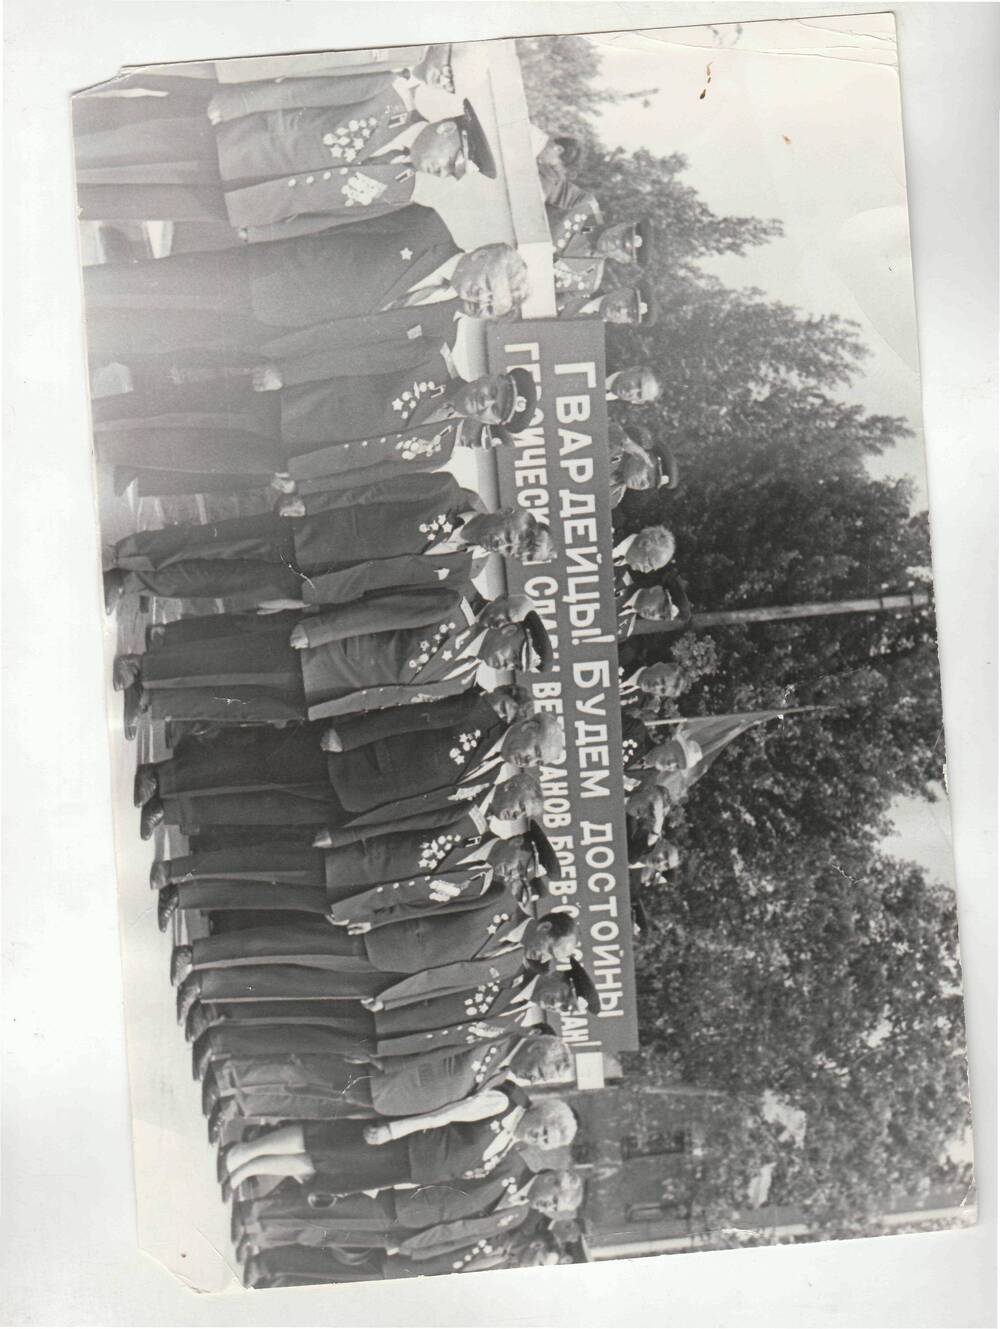 Ветераны 4-го Гв. мех.корпуса на встрече 30-я соединения в мае 1972 в Ворошиловграде.